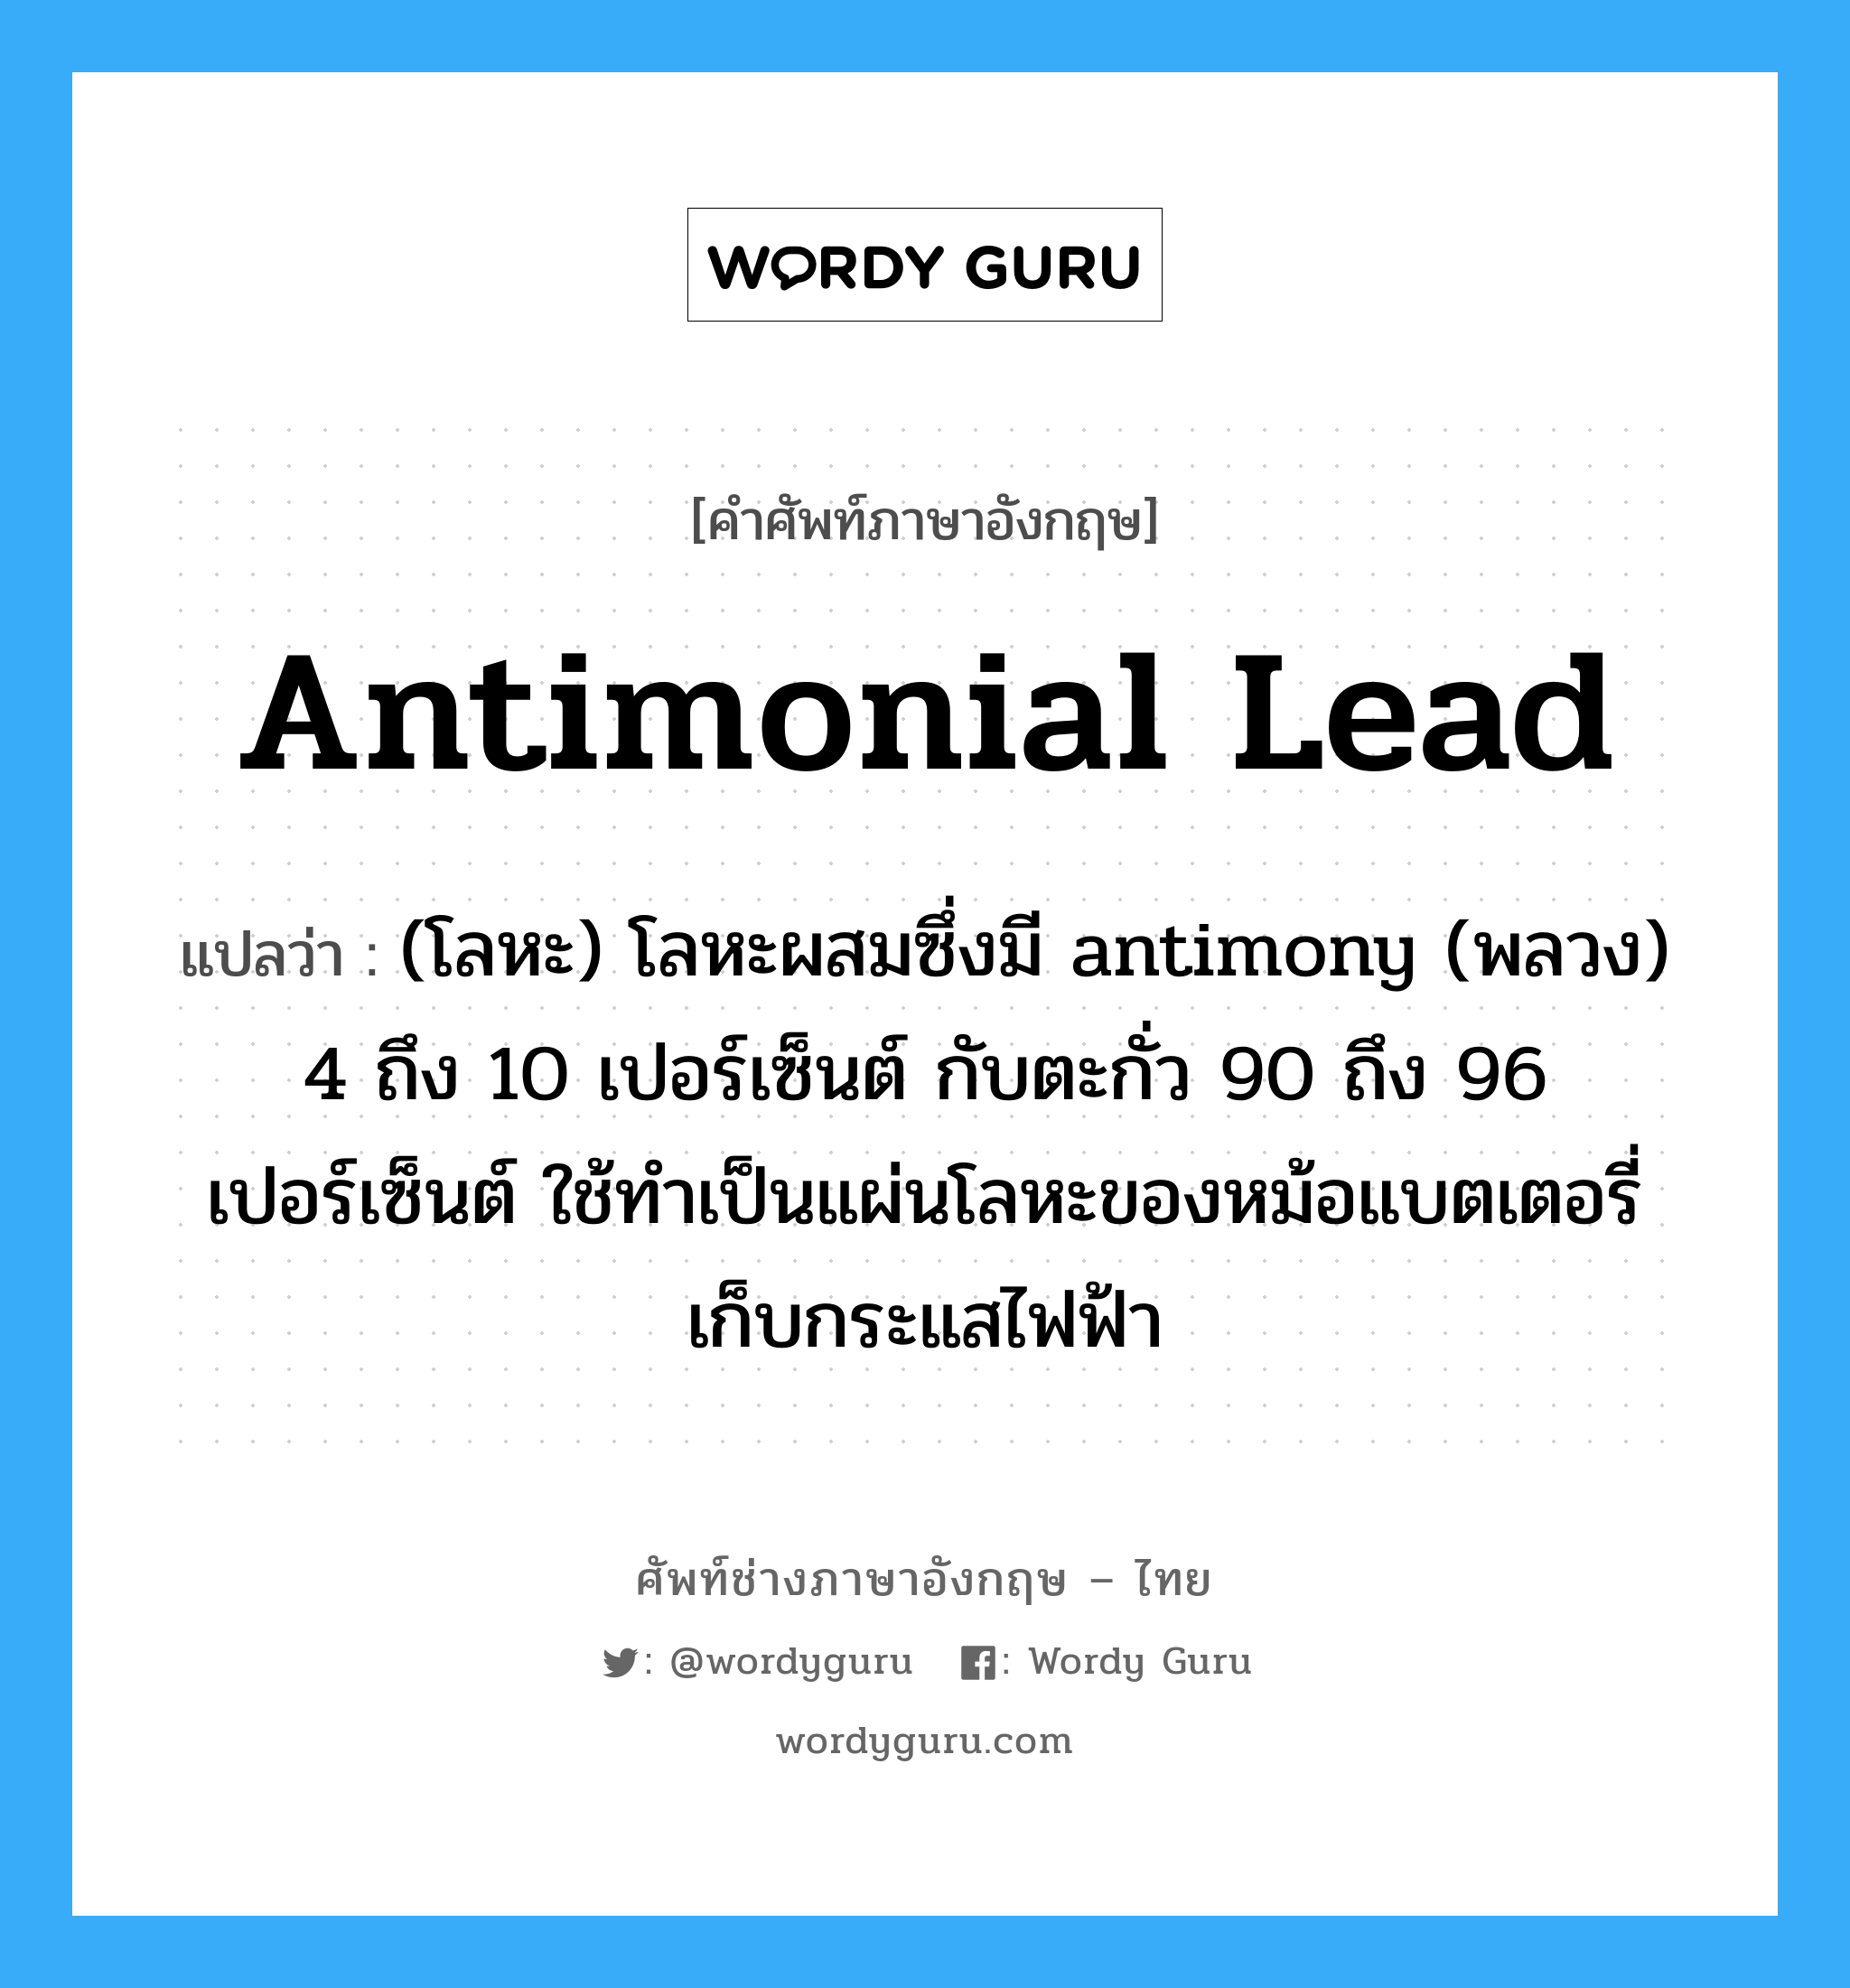 antimonial lead แปลว่า?, คำศัพท์ช่างภาษาอังกฤษ - ไทย antimonial lead คำศัพท์ภาษาอังกฤษ antimonial lead แปลว่า (โลหะ) โลหะผสมซึ่งมี antimony (พลวง) 4 ถึง 10 เปอร์เซ็นต์ กับตะกั่ว 90 ถึง 96 เปอร์เซ็นต์ ใช้ทำเป็นแผ่นโลหะของหม้อแบตเตอรี่เก็บกระแสไฟฟ้า